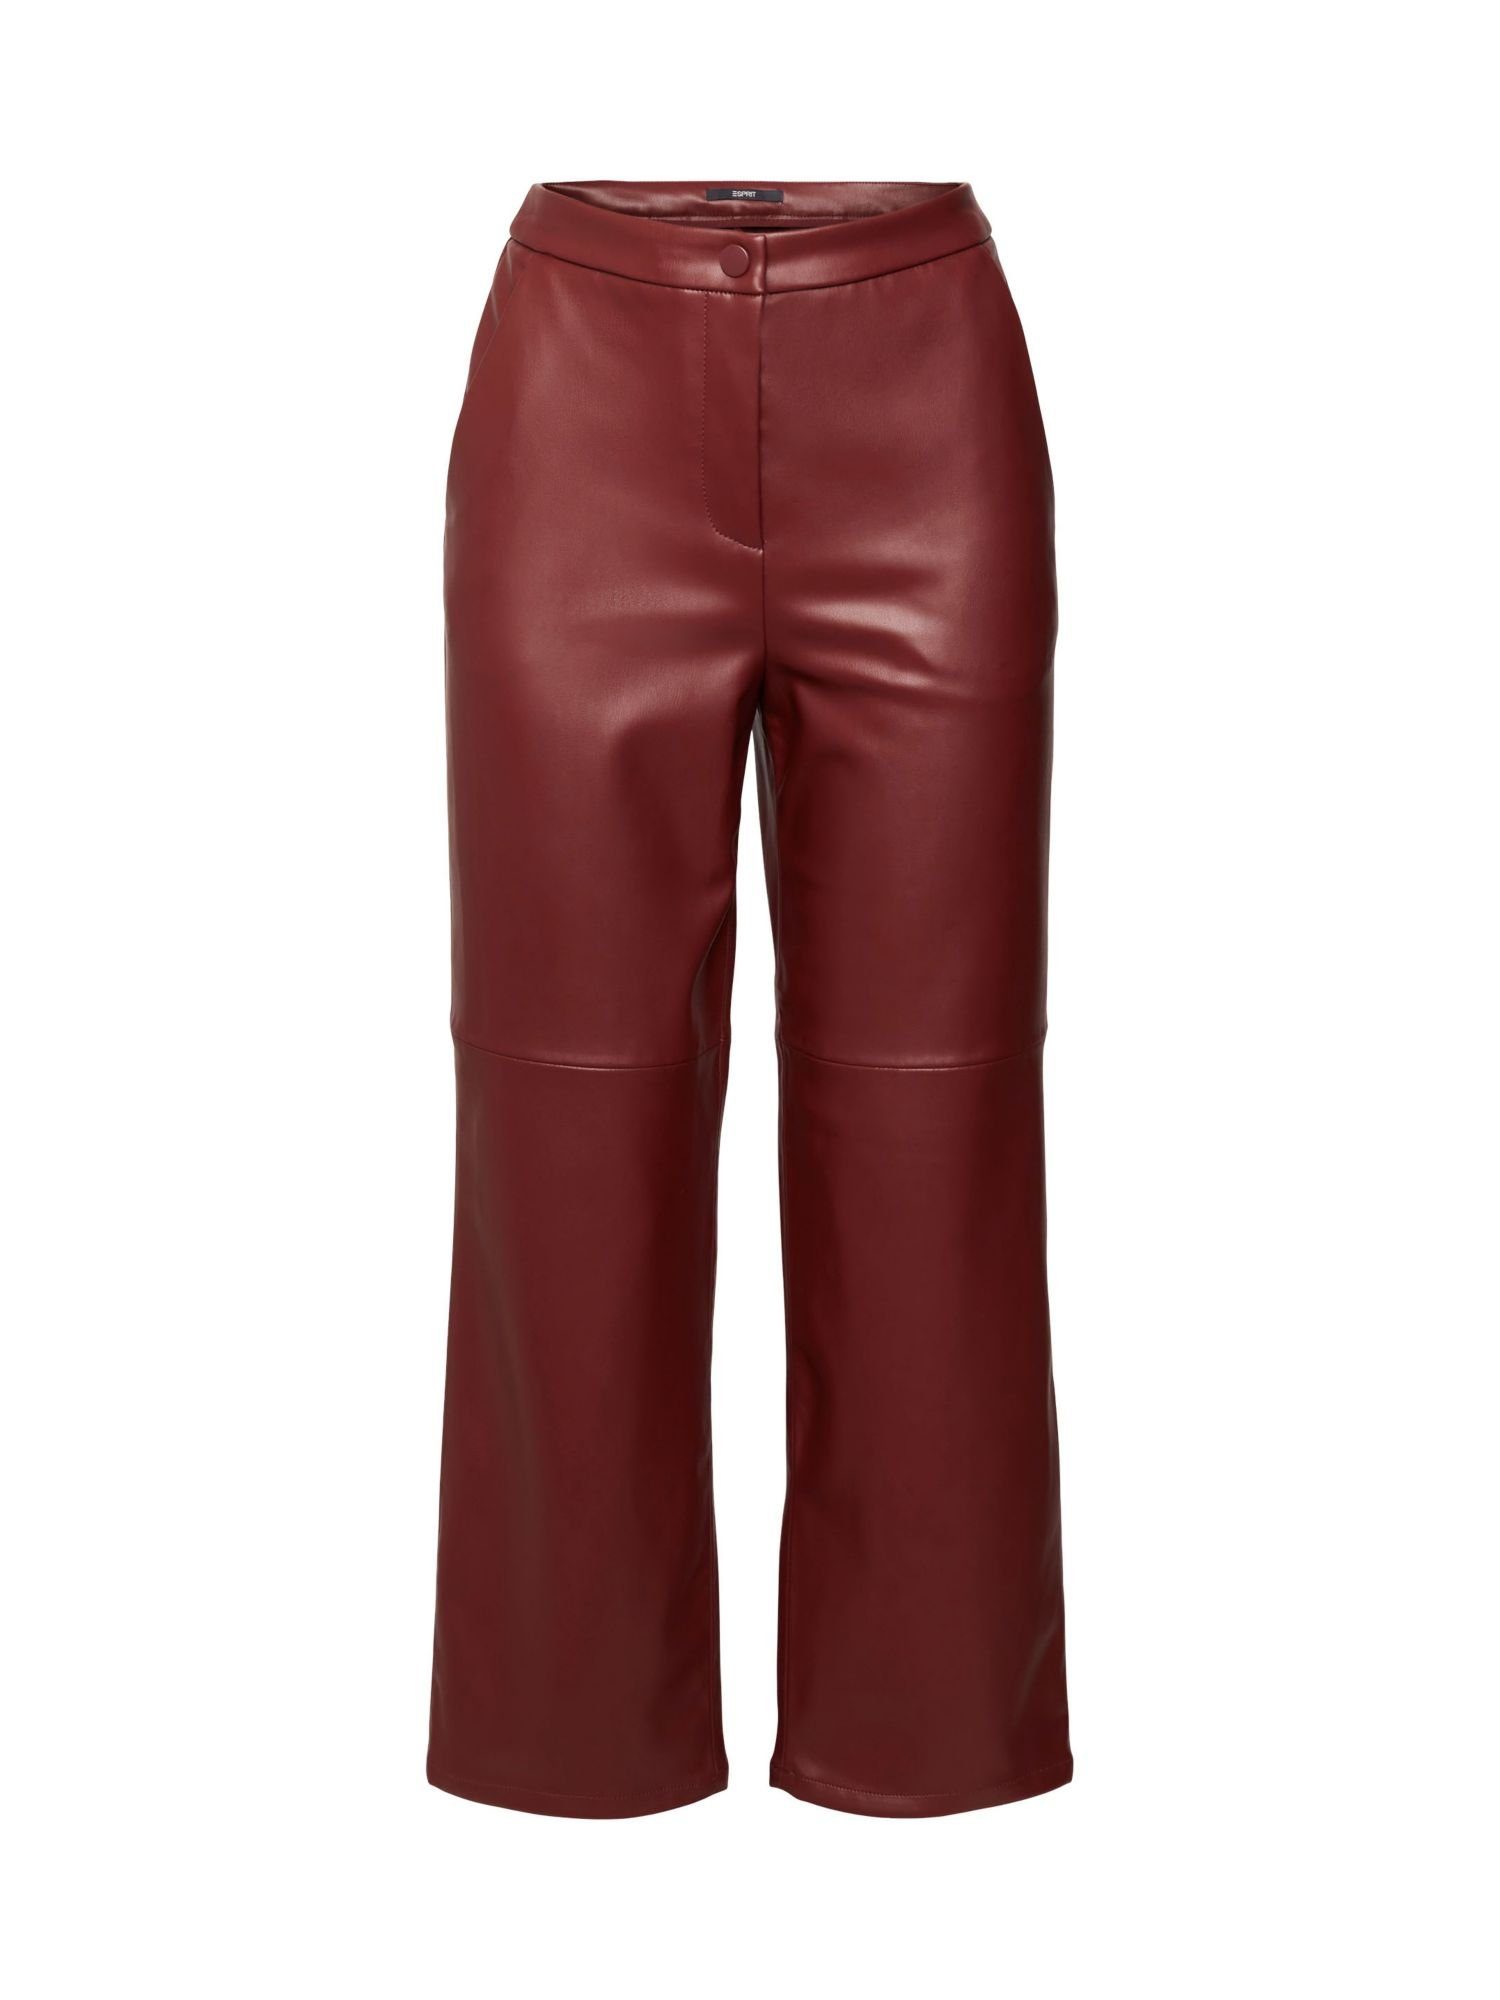 Esprit Collection 7/8-Hose Cropped-Hose RED in Lederoptik BORDEAUX